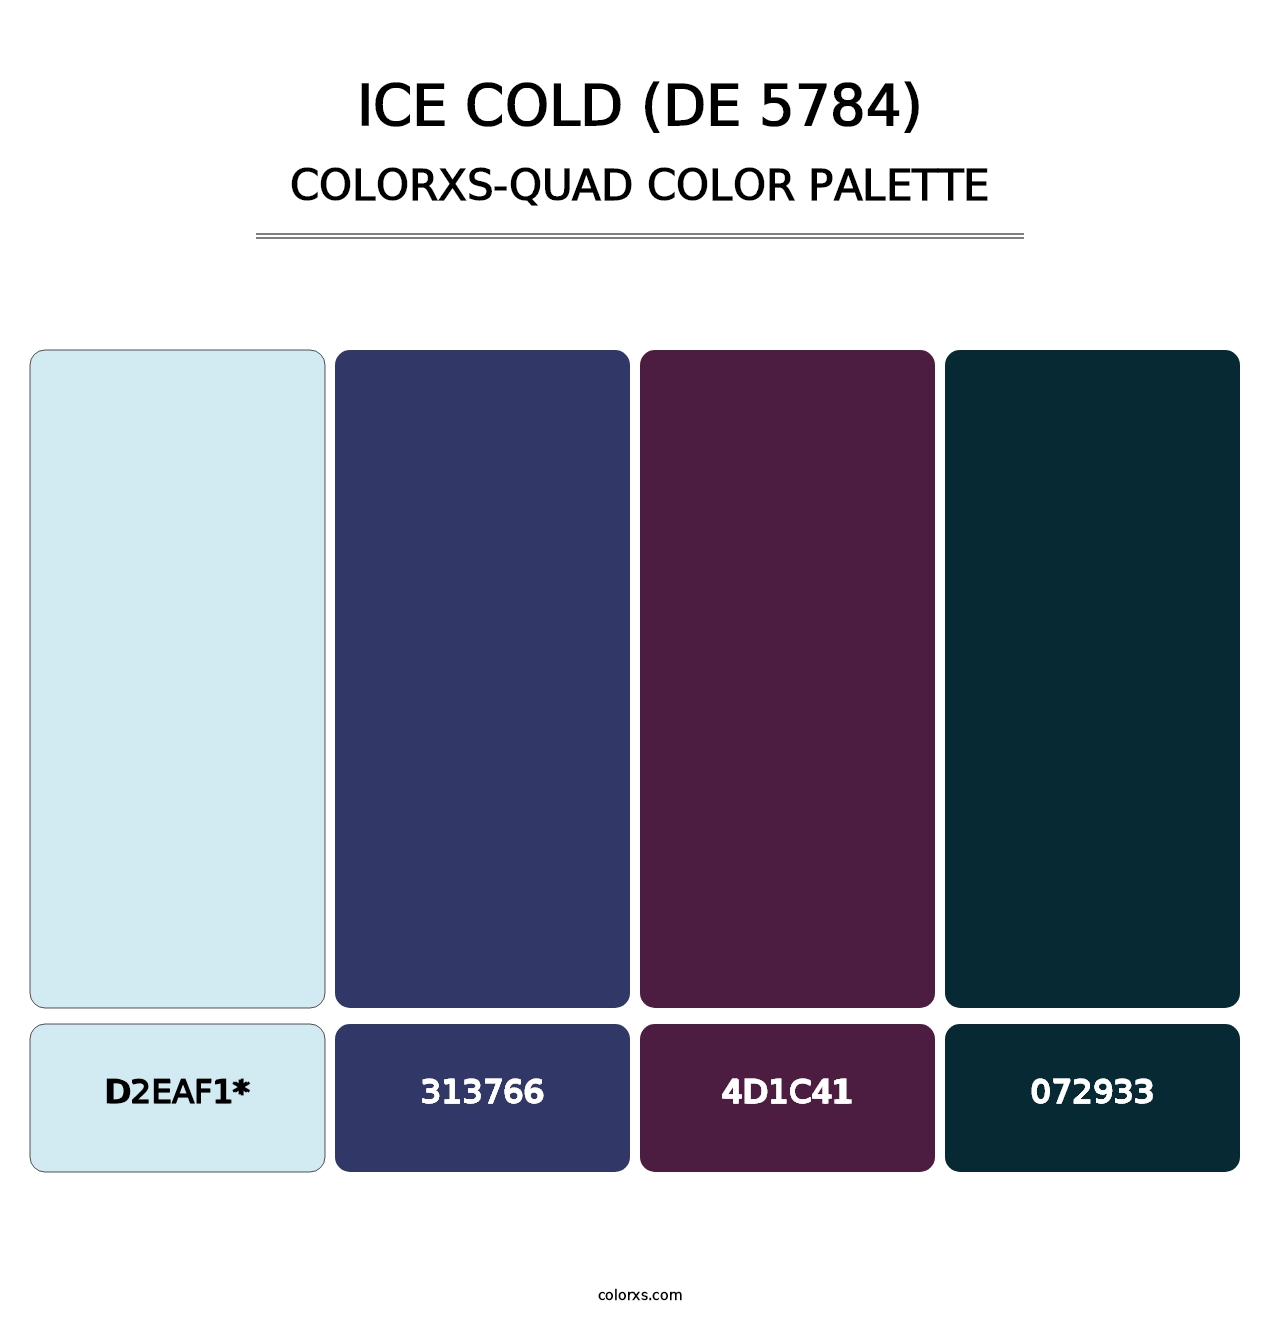 Ice Cold (DE 5784) - Colorxs Quad Palette